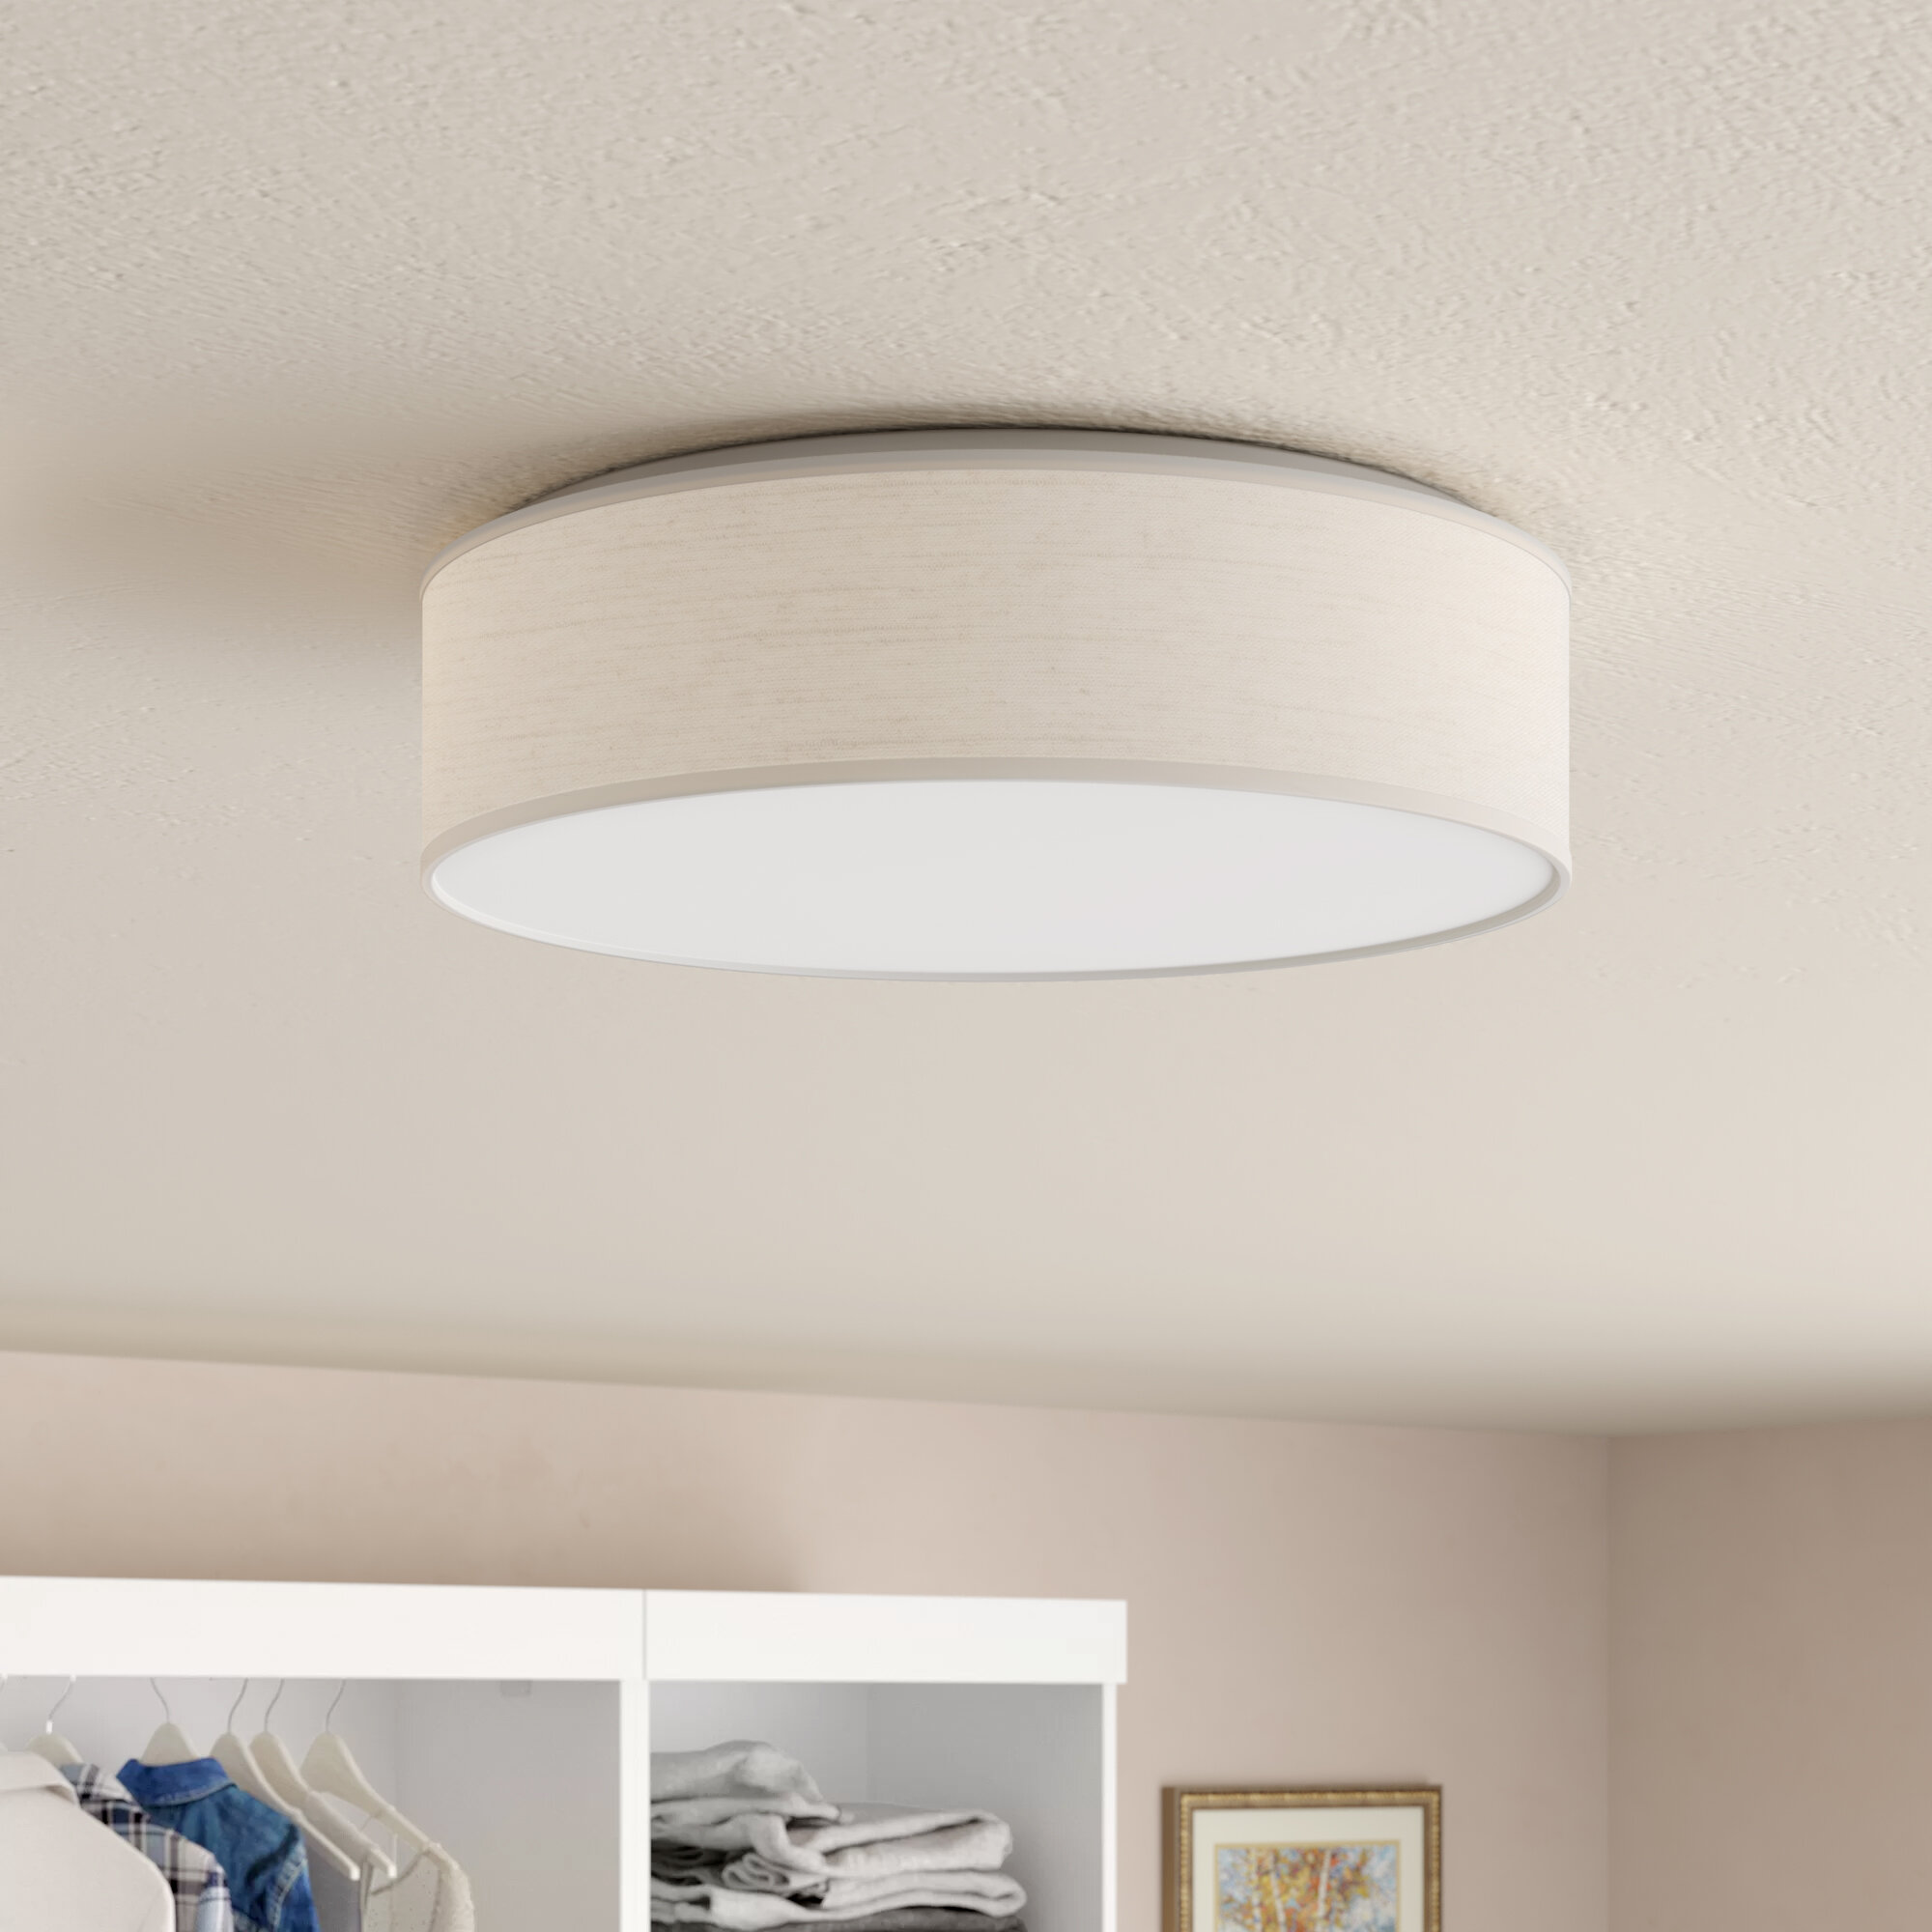 LED Flush Mount Ultra Bright Lighting Fixture Ceiling Light Ceiling Light UP 